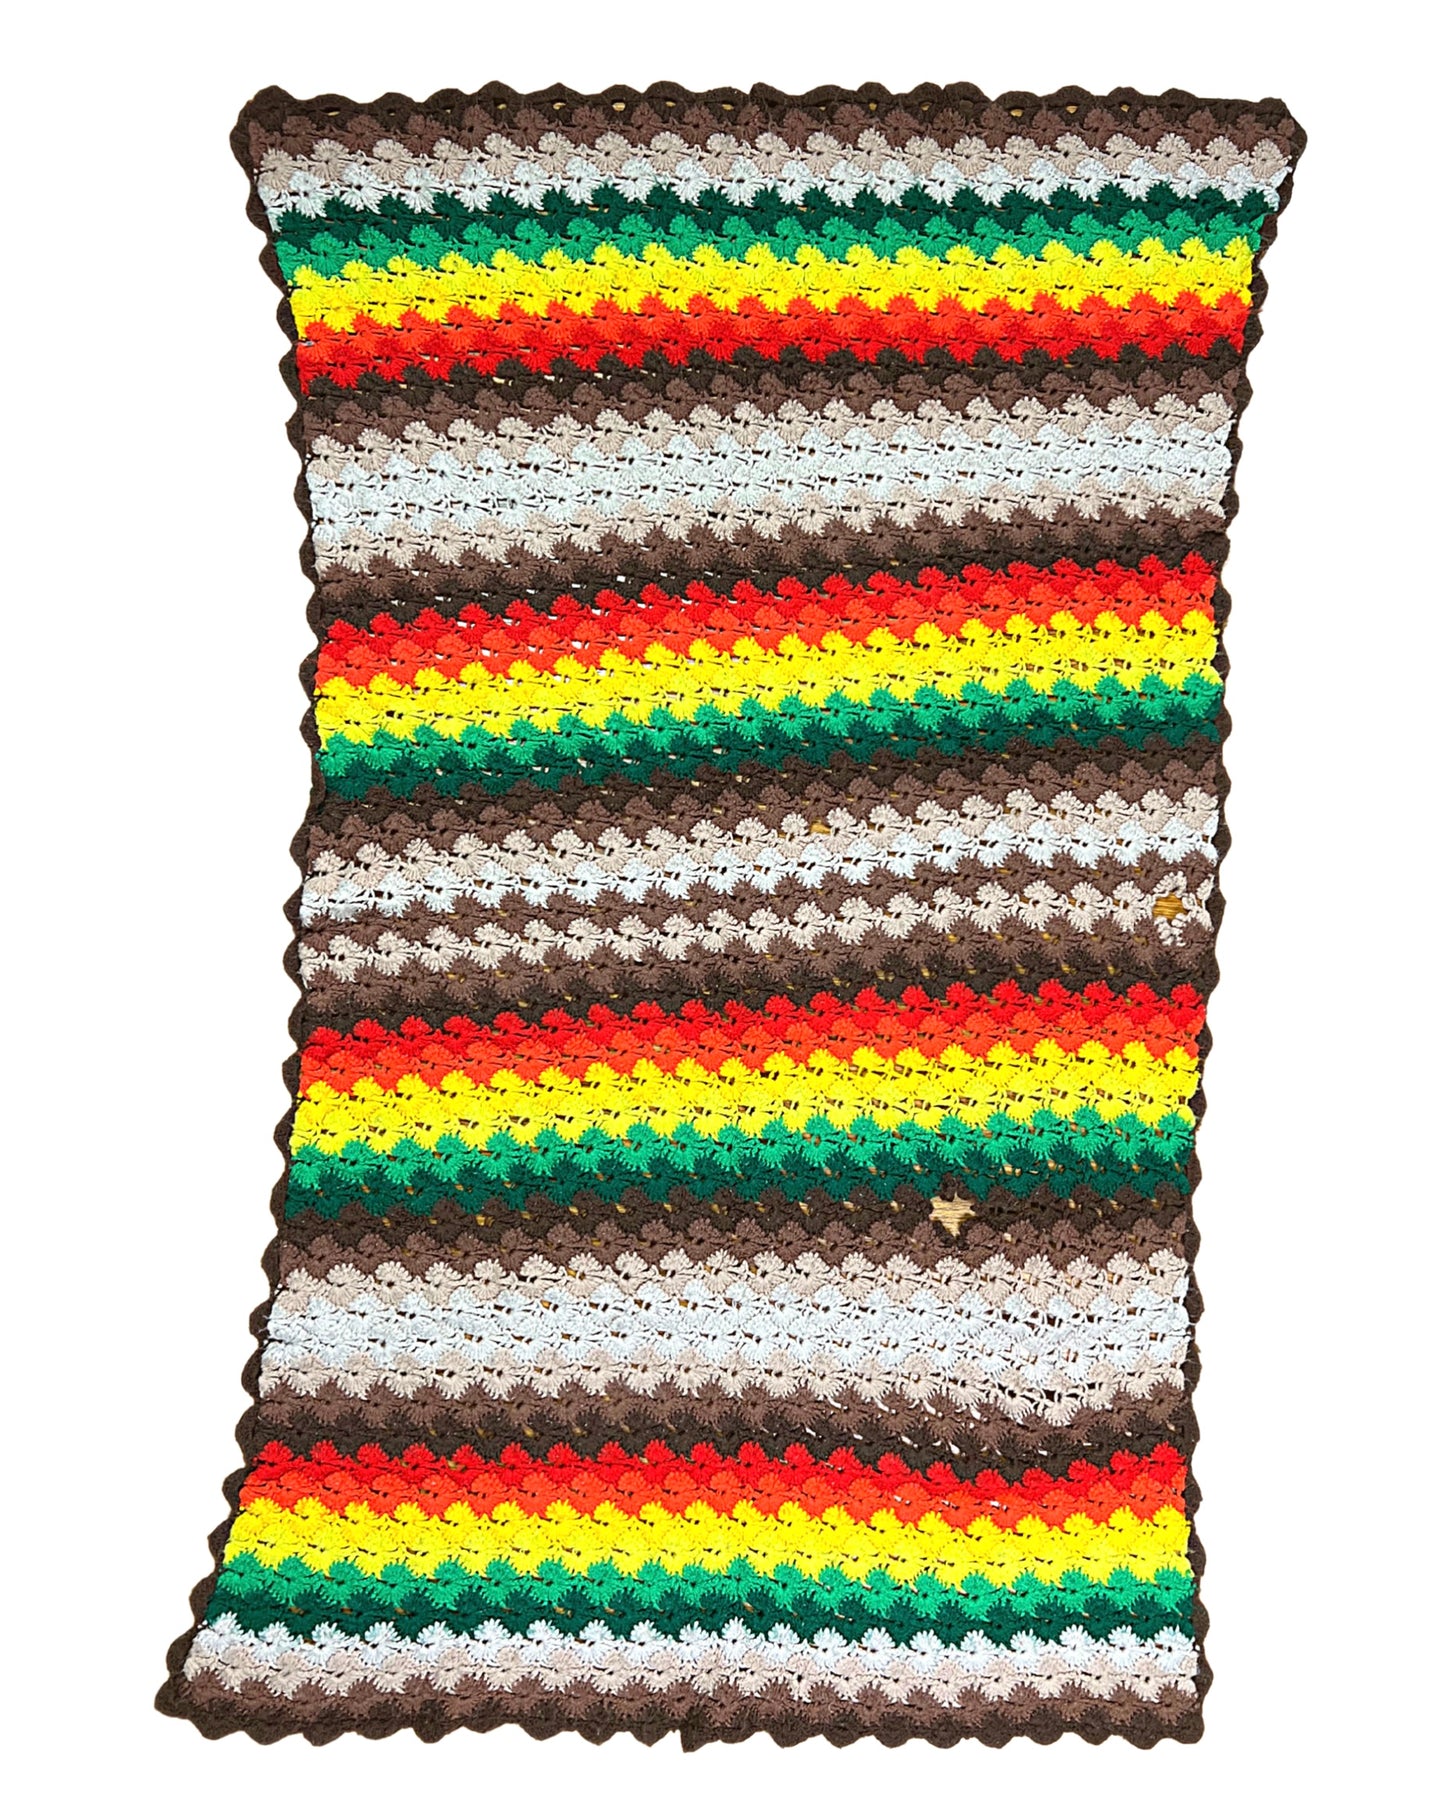 70’s Crocheted Rainbow Ombré Boho Afghan Throw 59” x 36”